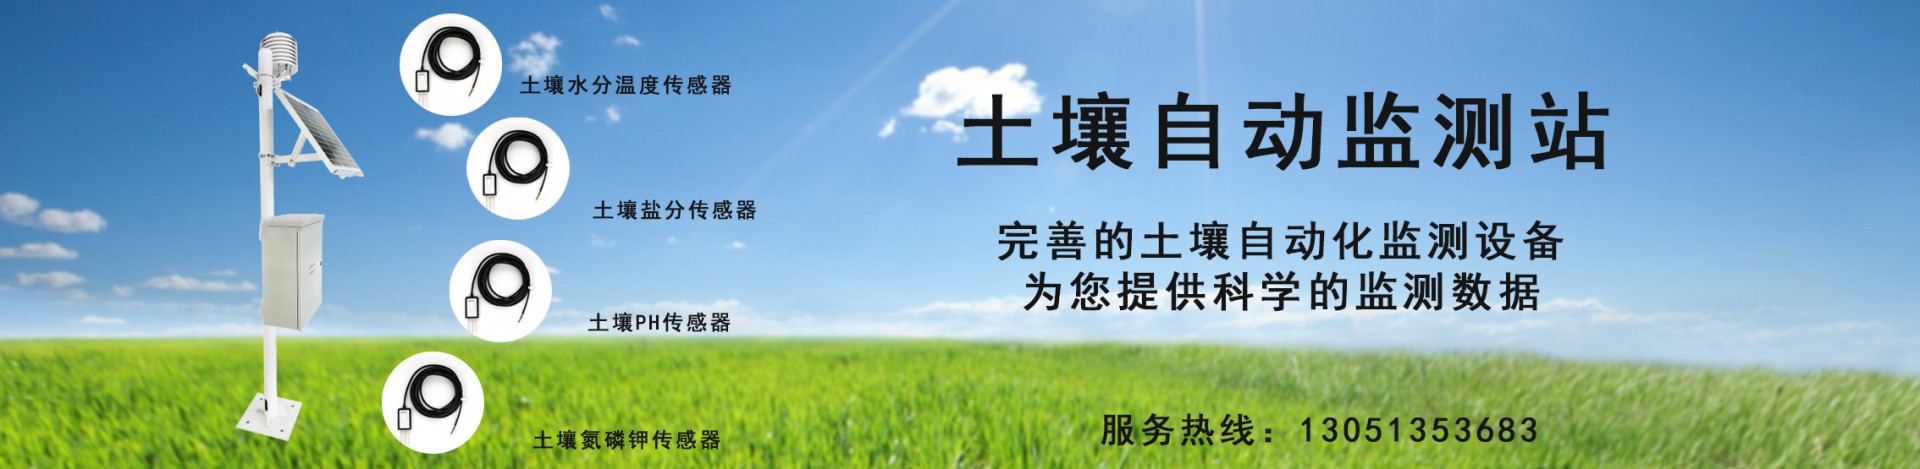 树木生长监测系统、植物茎流液流系统、土壤蒸渗仪、气象站等-东方鑫鸿（北京）科技有限公司